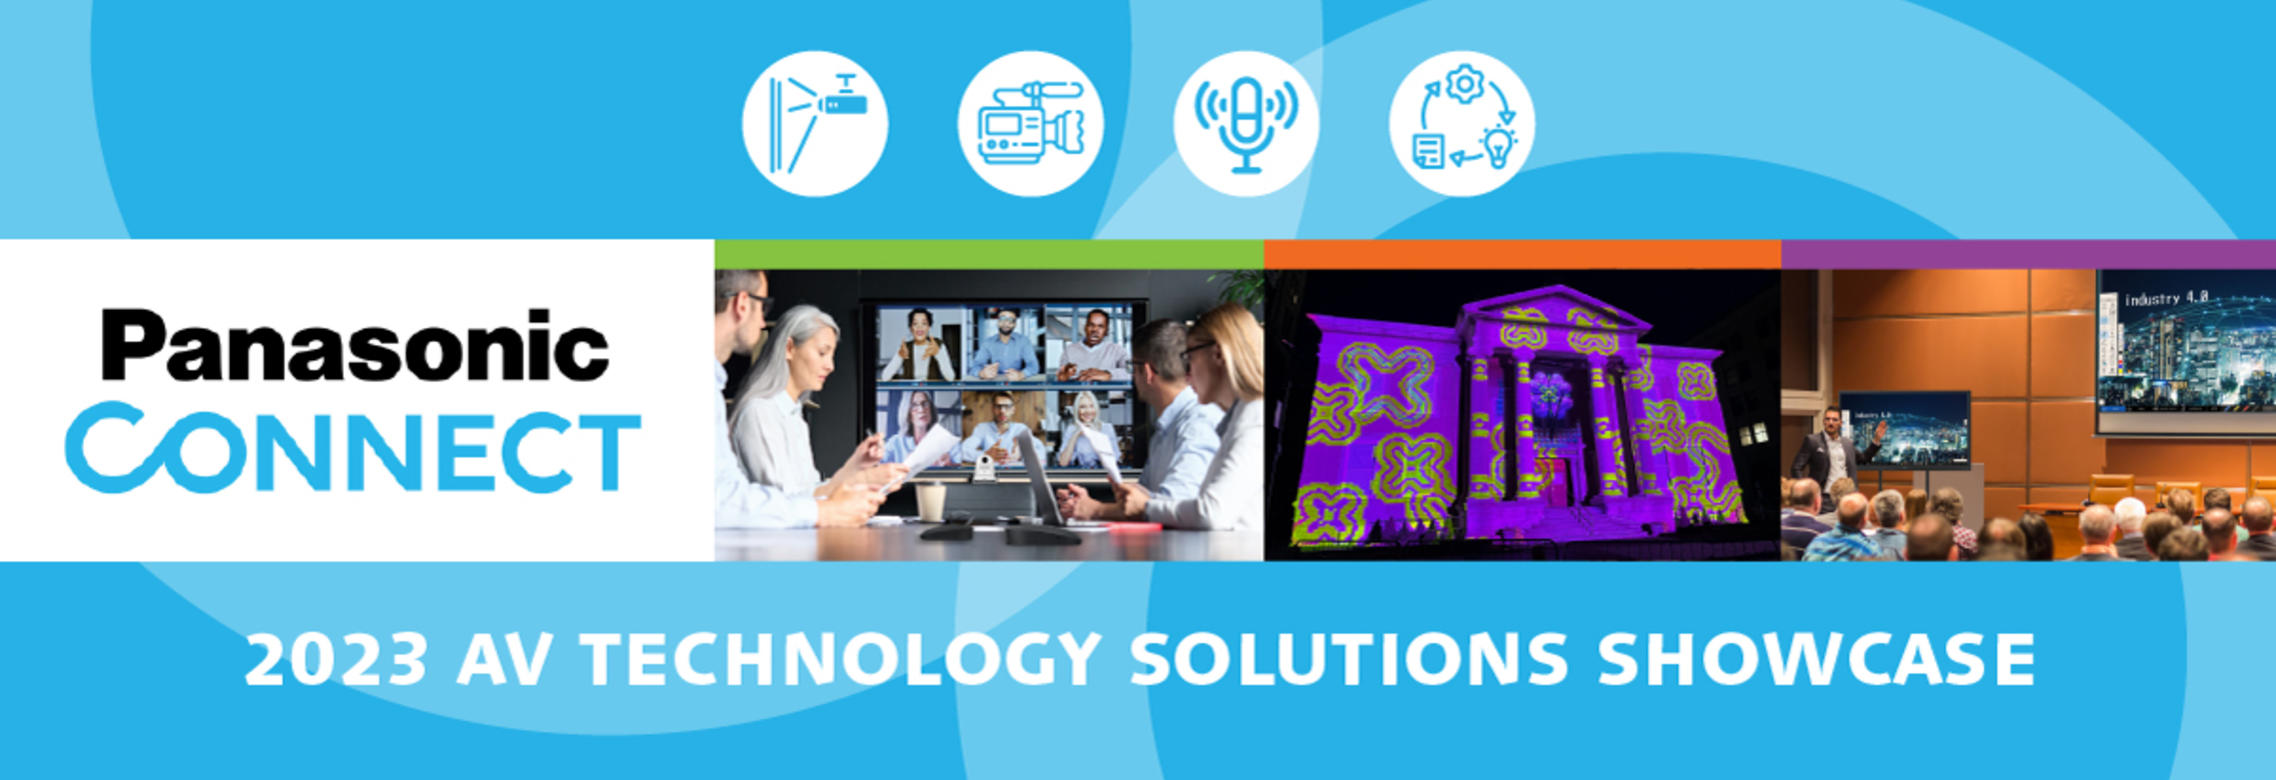 AV-Technology-Solutions-Showcase_header_1200x425